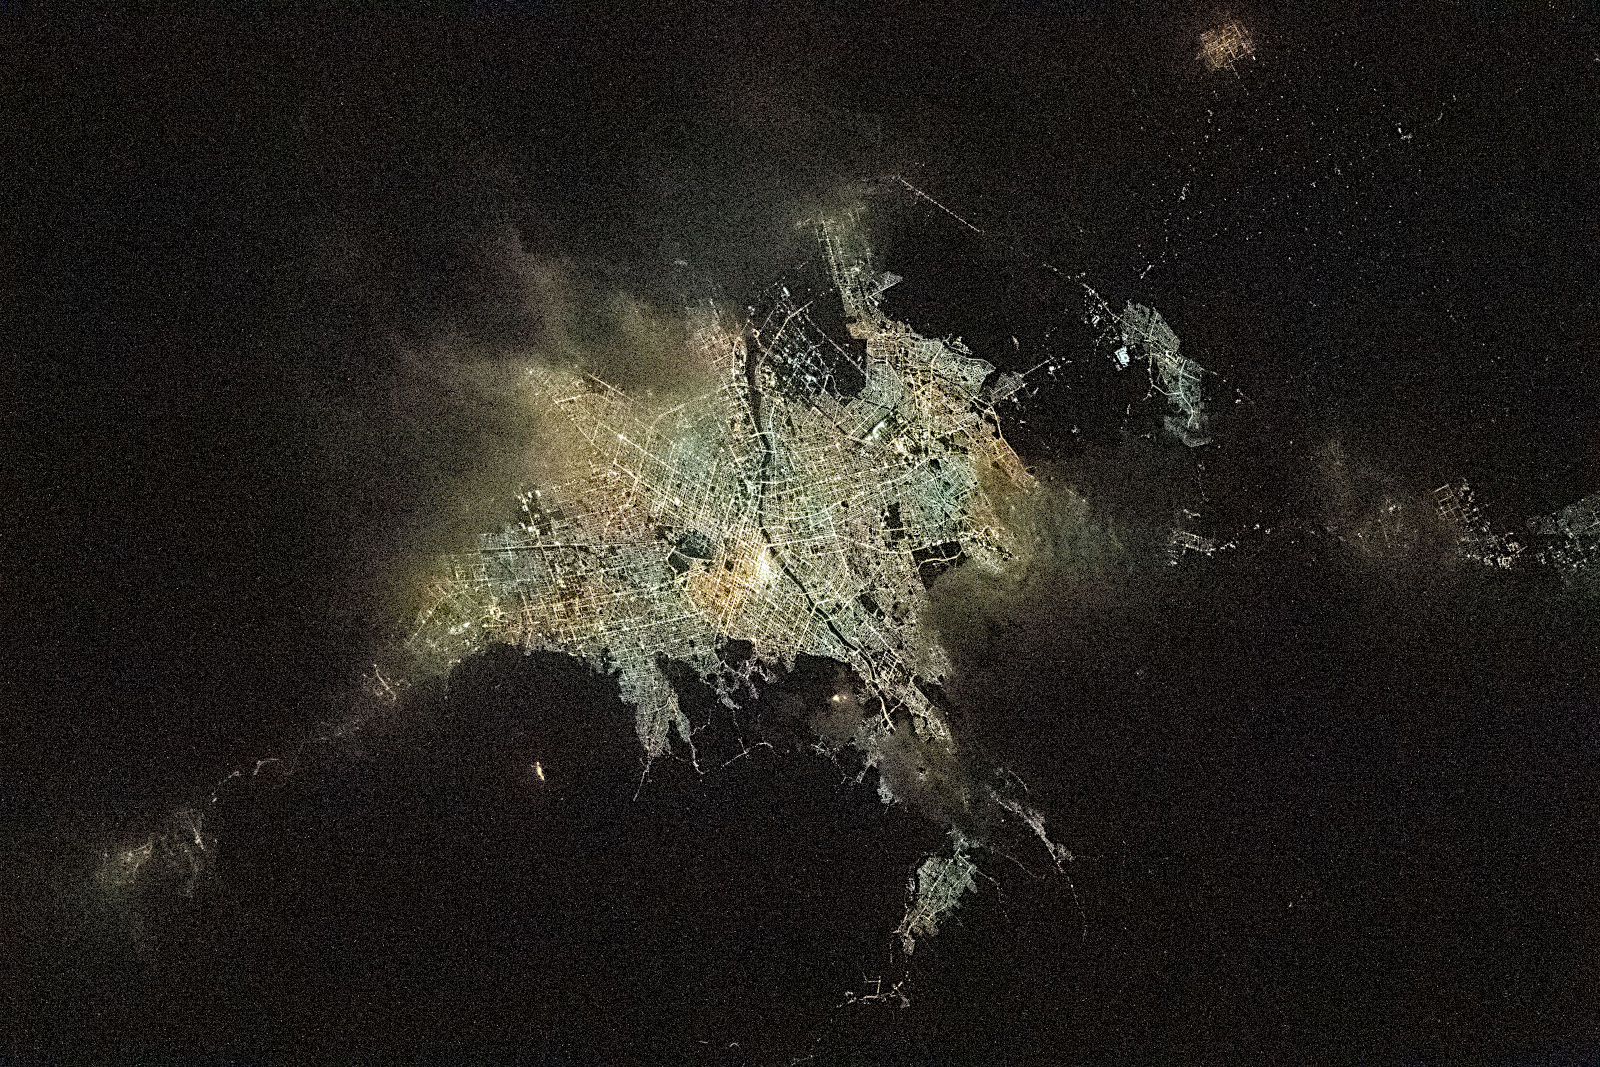 Issから見た札幌周辺の夜景 アストロピクス